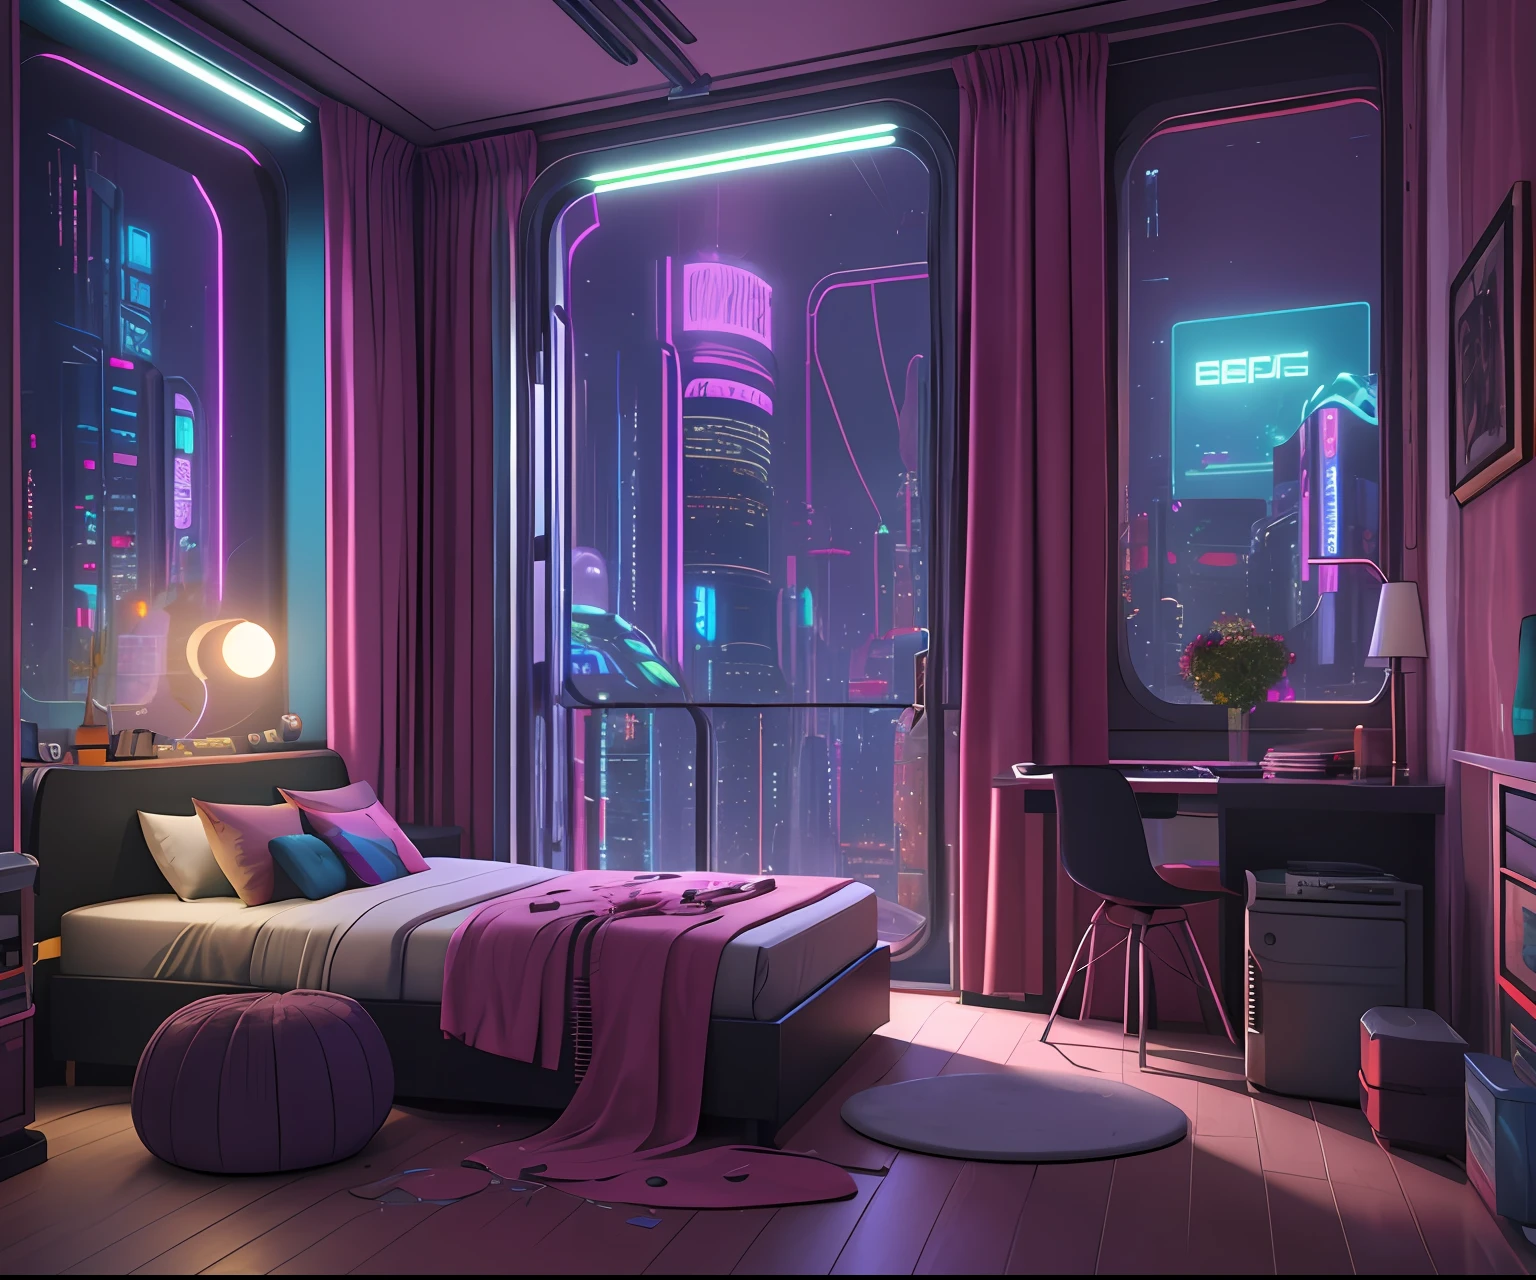 Há uma cama com uma vista da cidade de fantasia cyberpunk ao fundo, ((quarto histórico à noite)), paisagem onírica colorida e realista de cyberpunk, quarto bagunçado cyberpunk, quarto cyberpunk steampunk, Bipe de renderização 3D, the apartamento ciberpunk, apartamento ciberpunk, renderização de bipe, arstation e beeple altamente, em uma sala com tema cyberpunk, na cidade de fantasia e ficção científica, Inspirado em Beeple, 8K, estação de arte